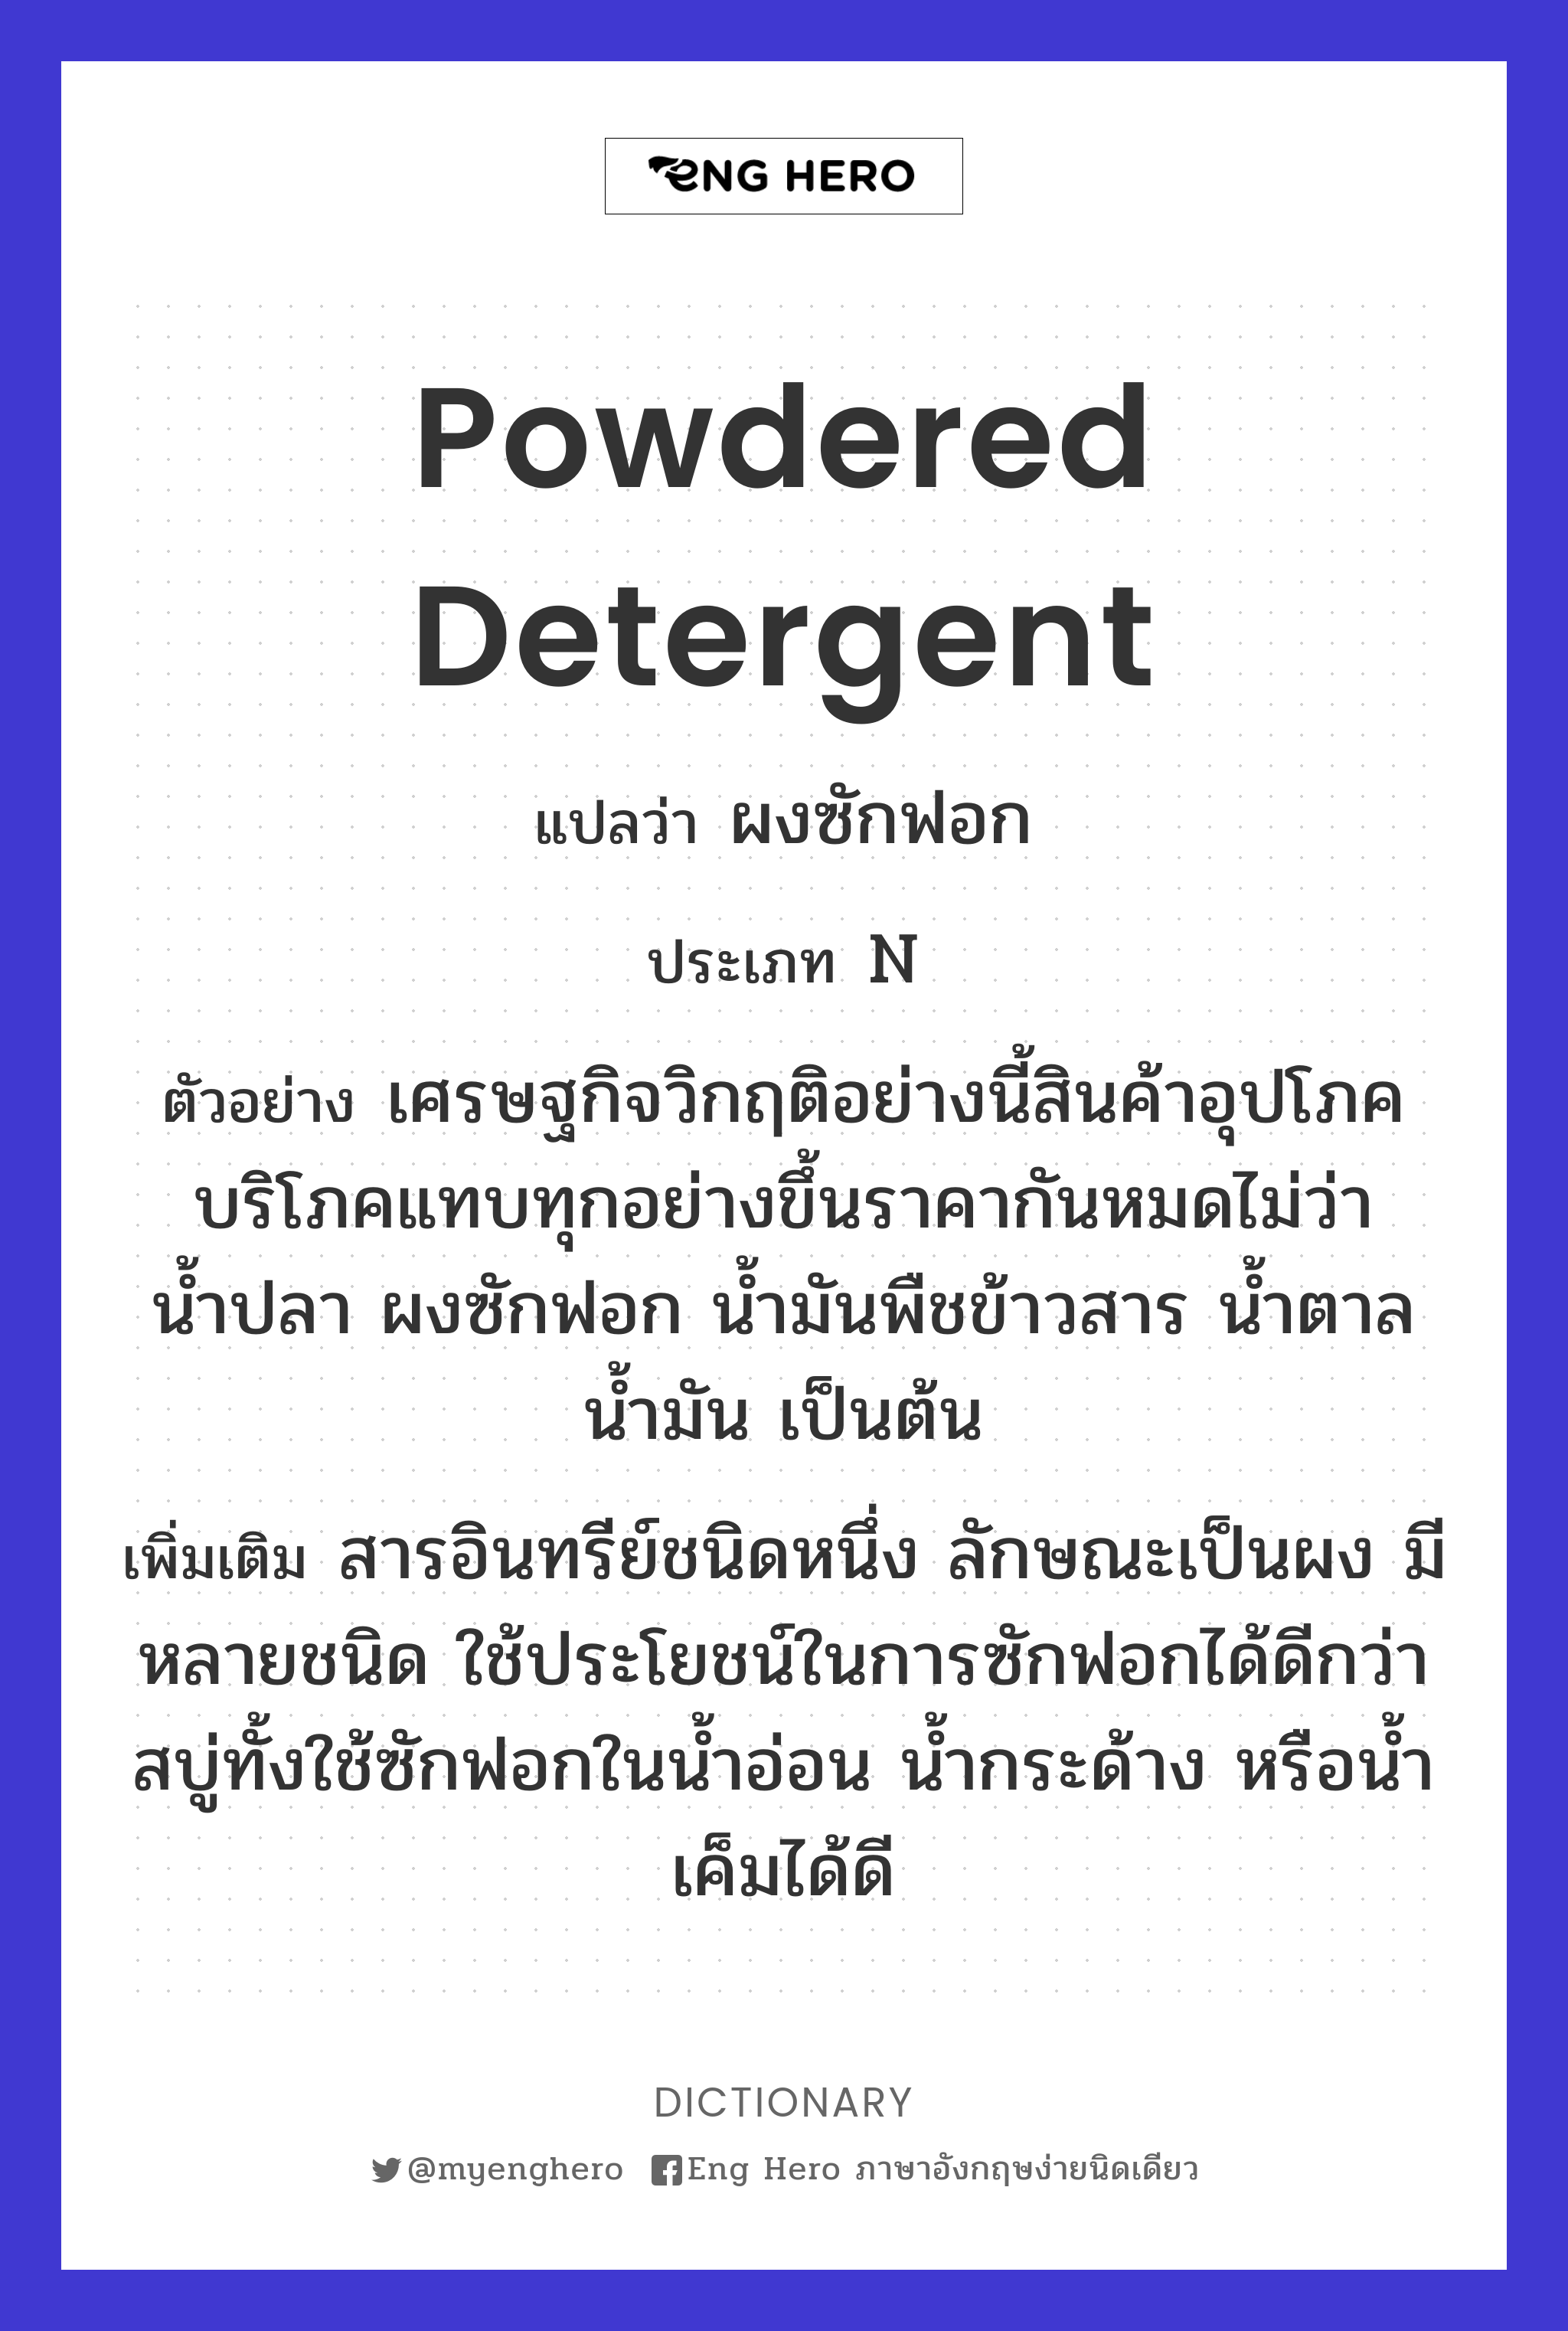 powdered detergent